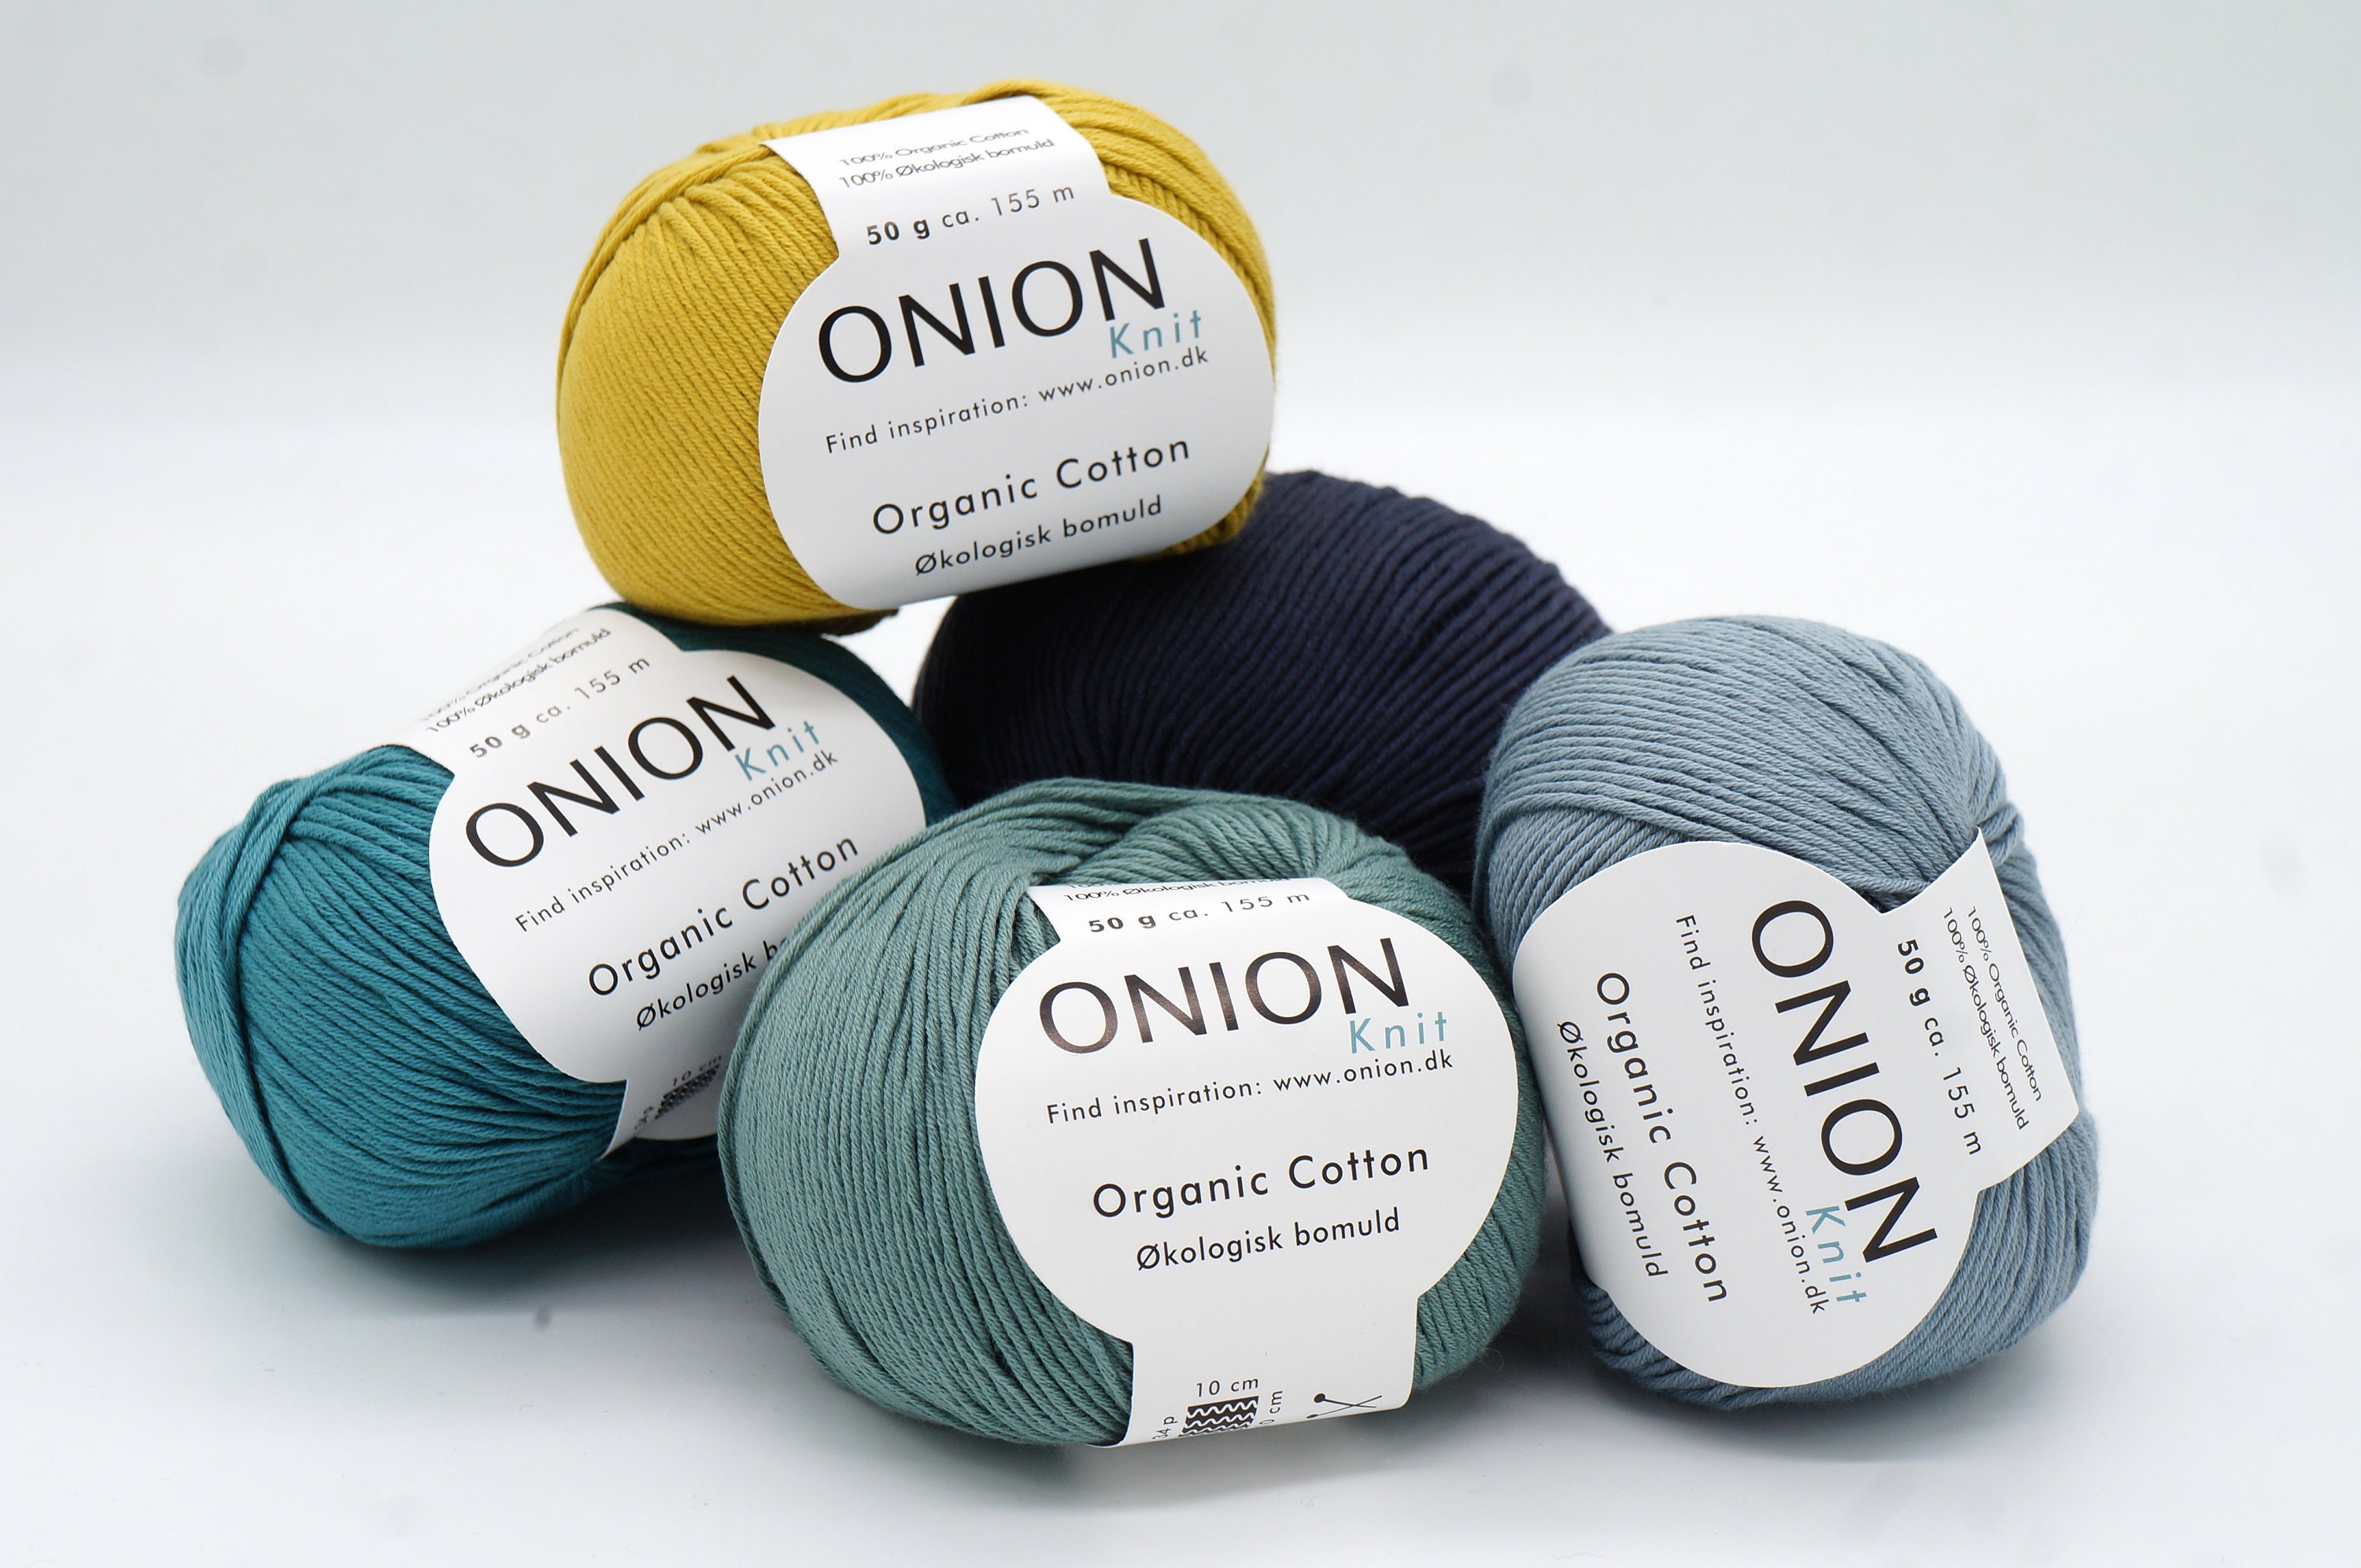 Organic Cotton ONION Organic Cotton Knitting - Etsy